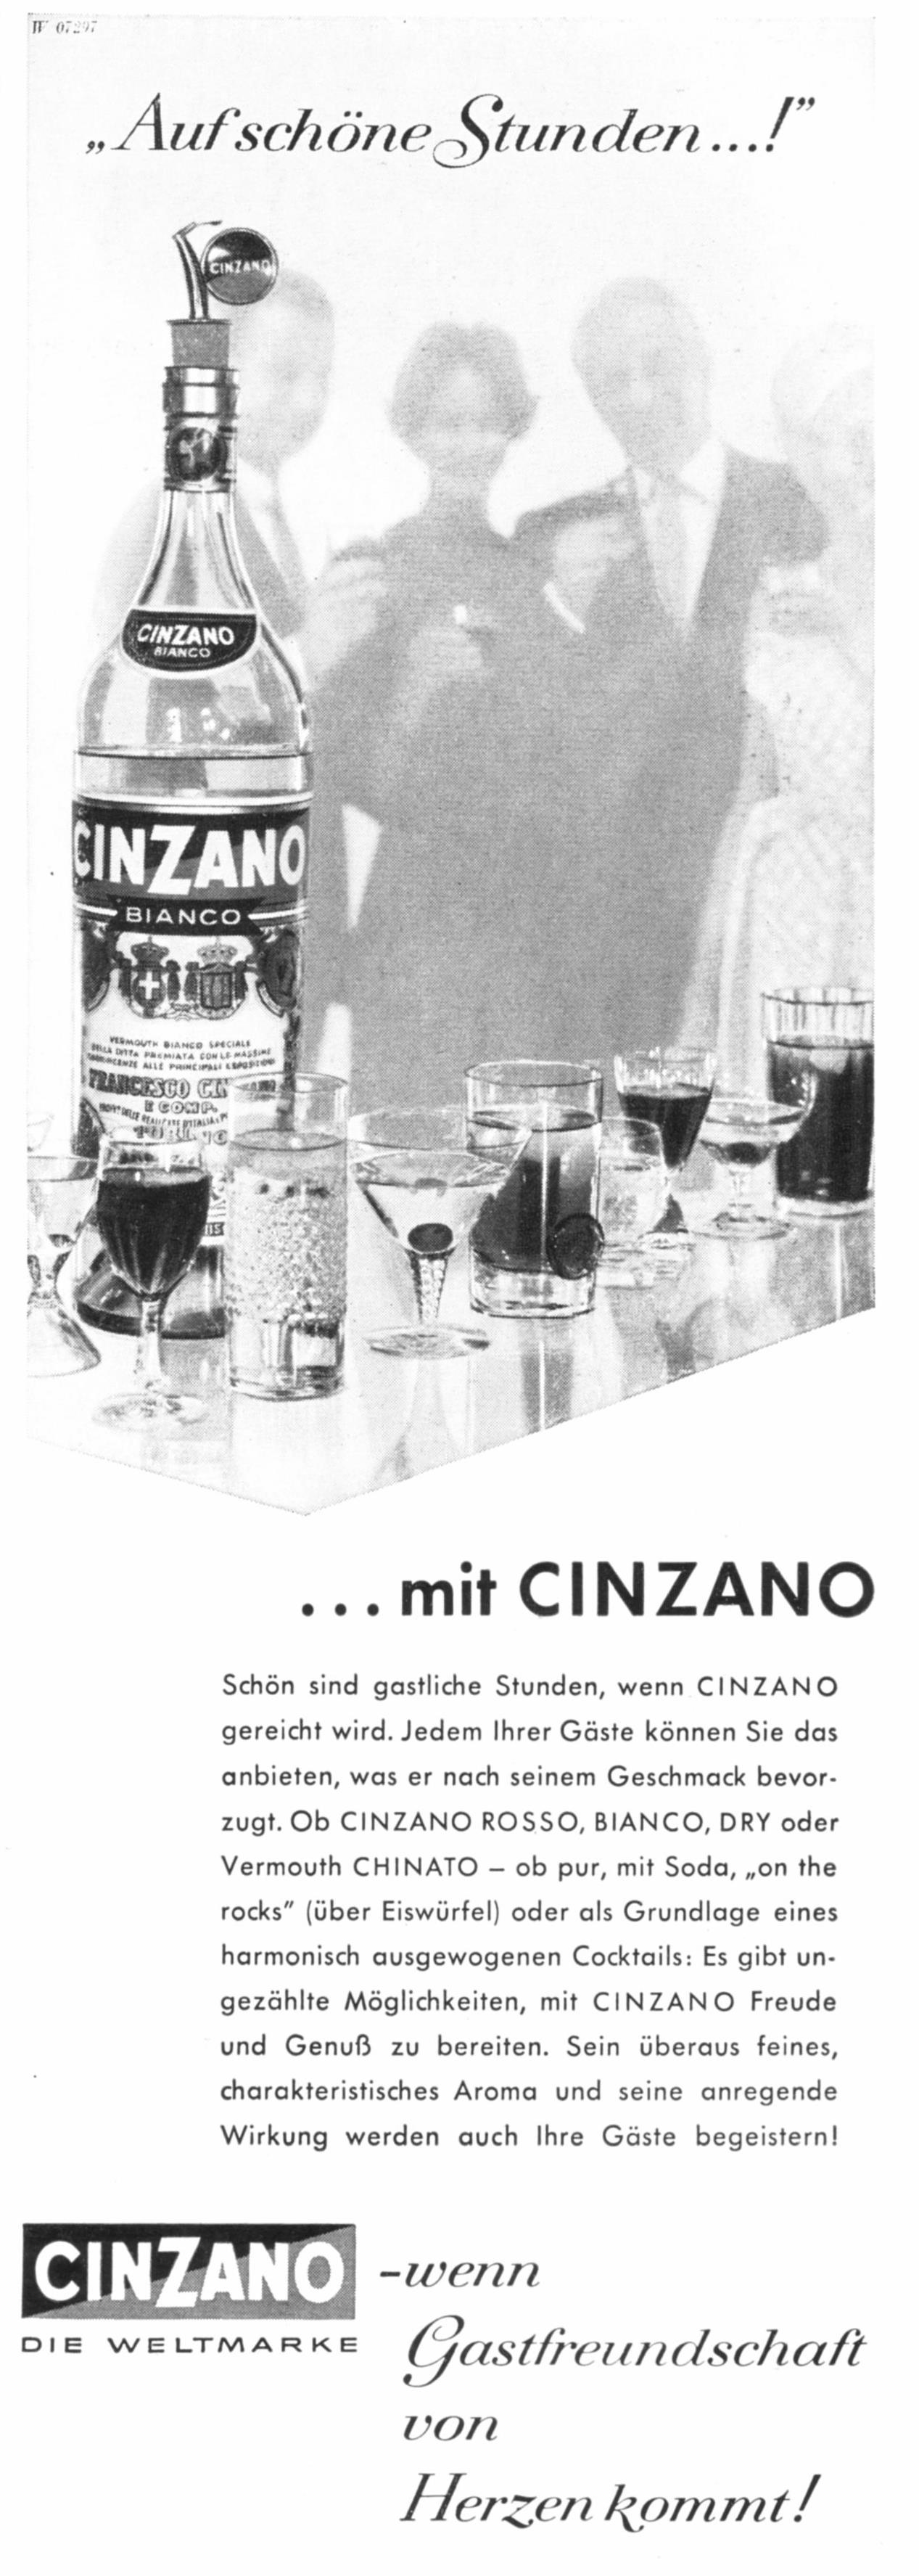 Cinzano 1959 1.jpg